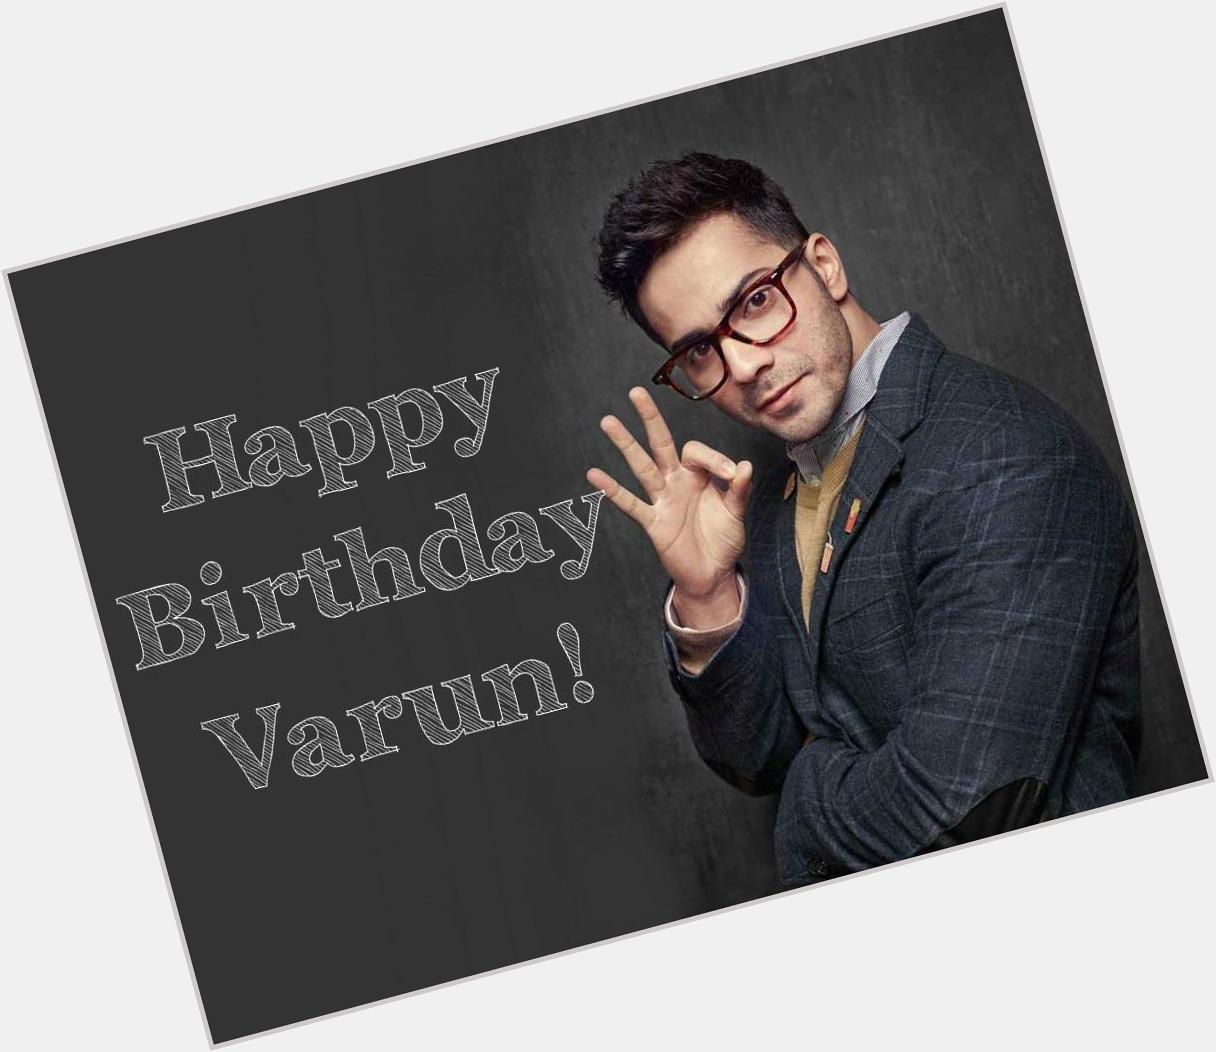 Happy Birthday Varun Dhawan! 